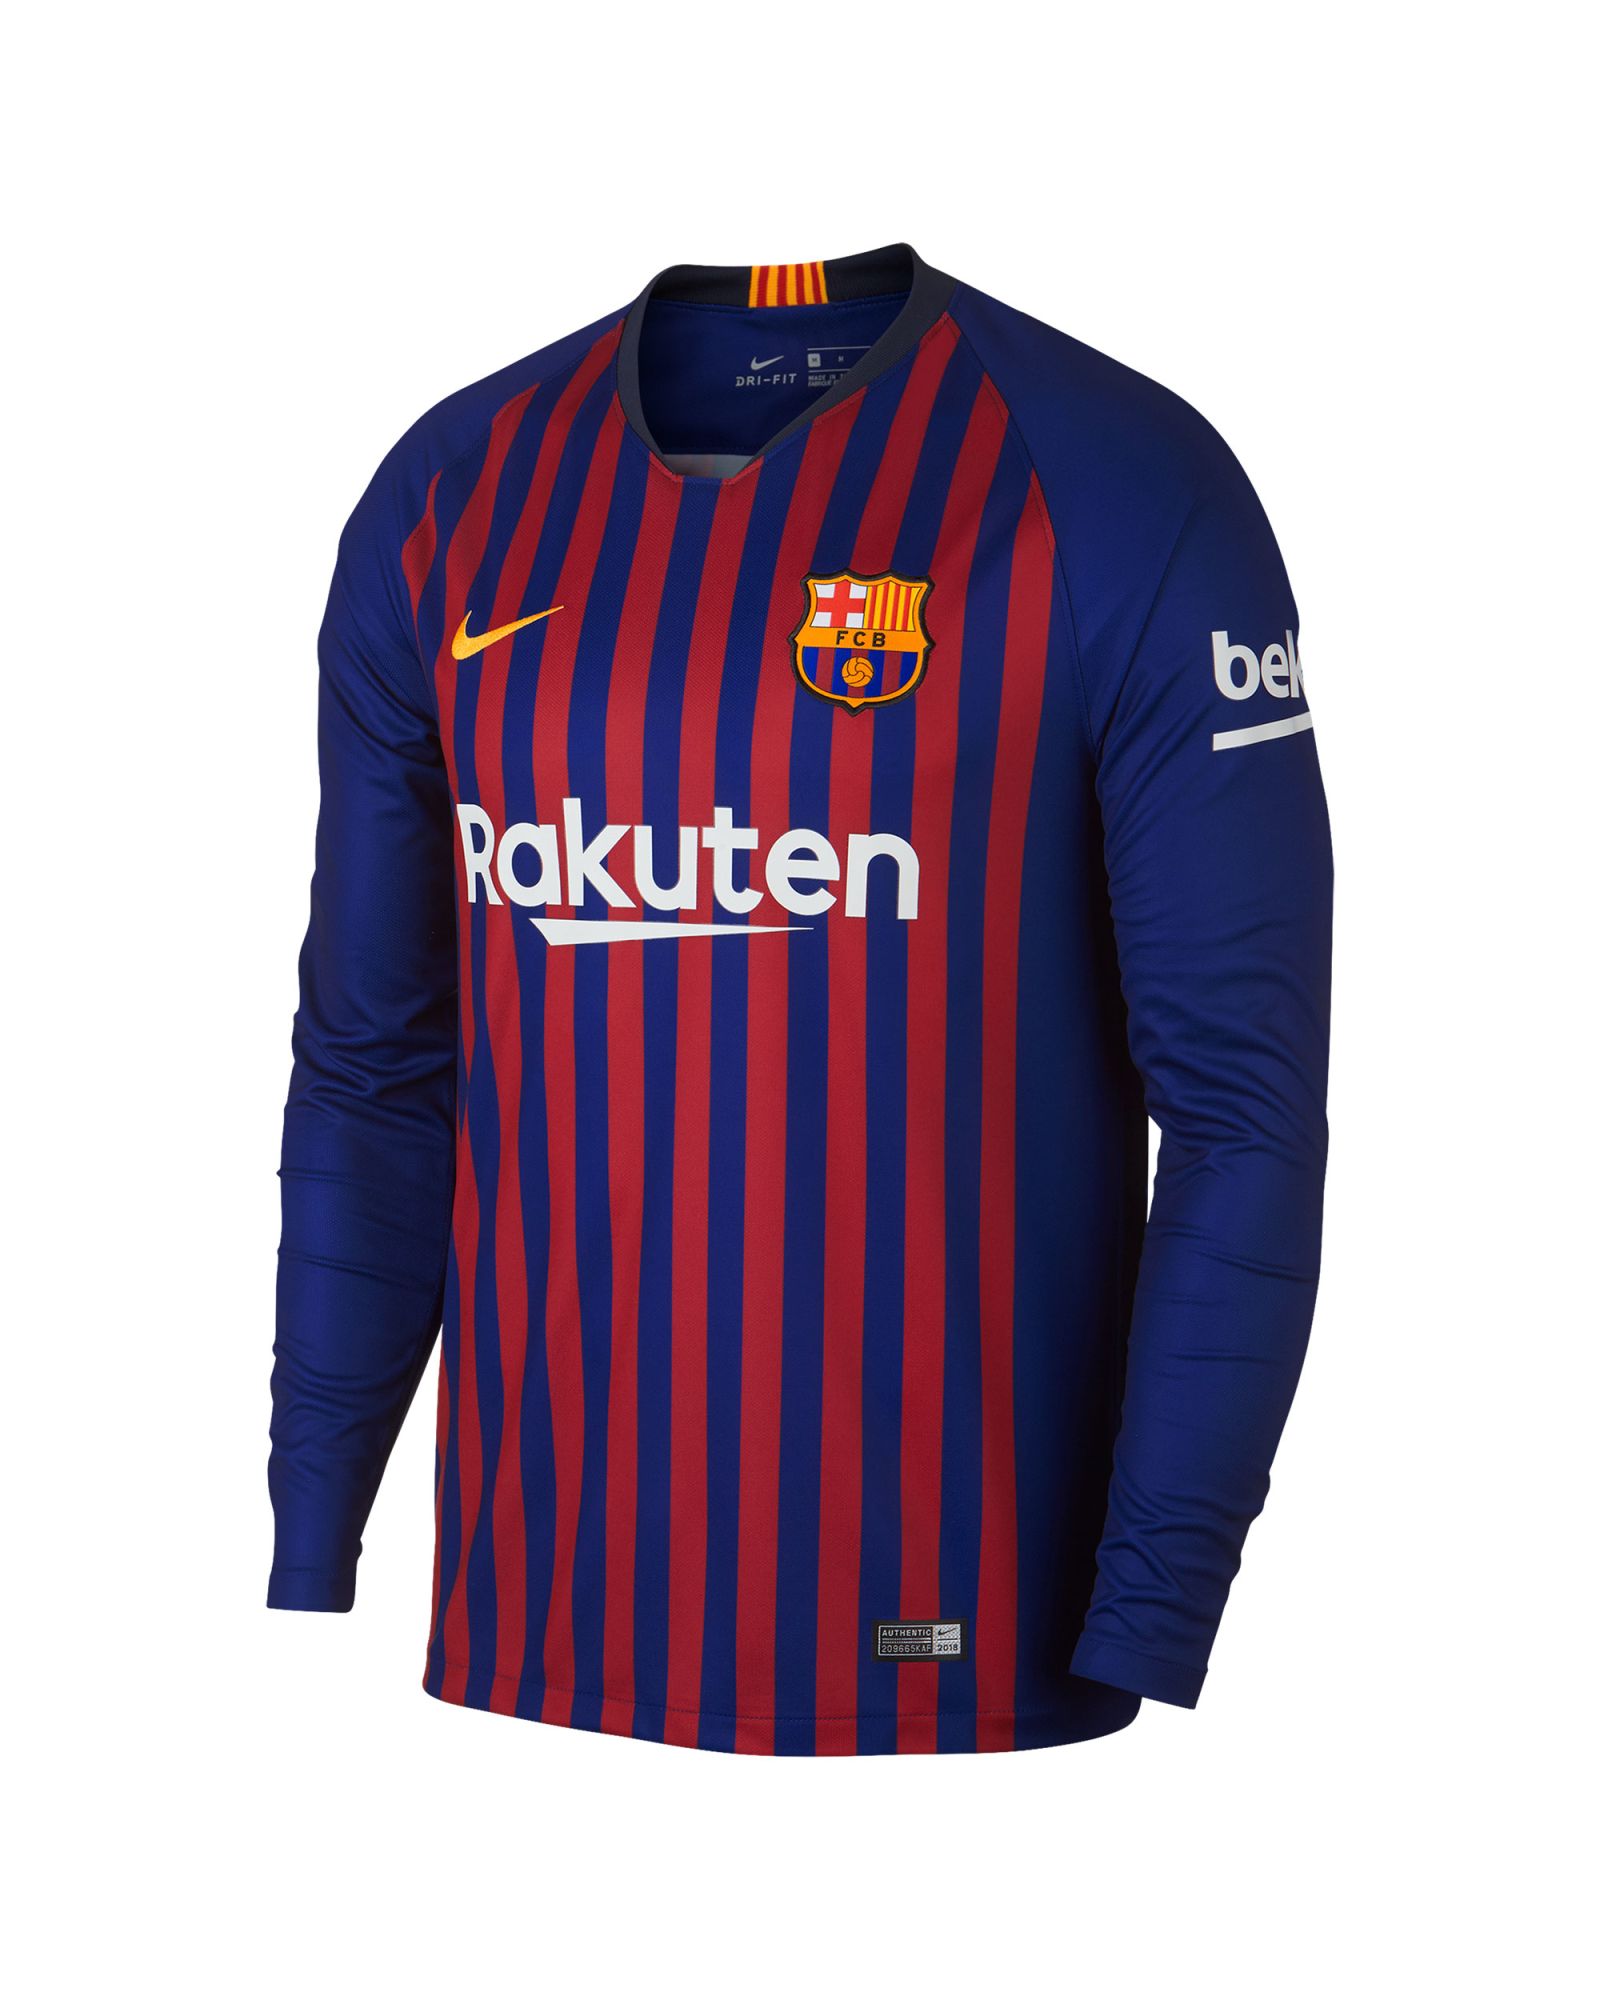 temerario Subrayar salida Camiseta 1ª FC Barcelona 2018/2019 Manga Larga Stadium